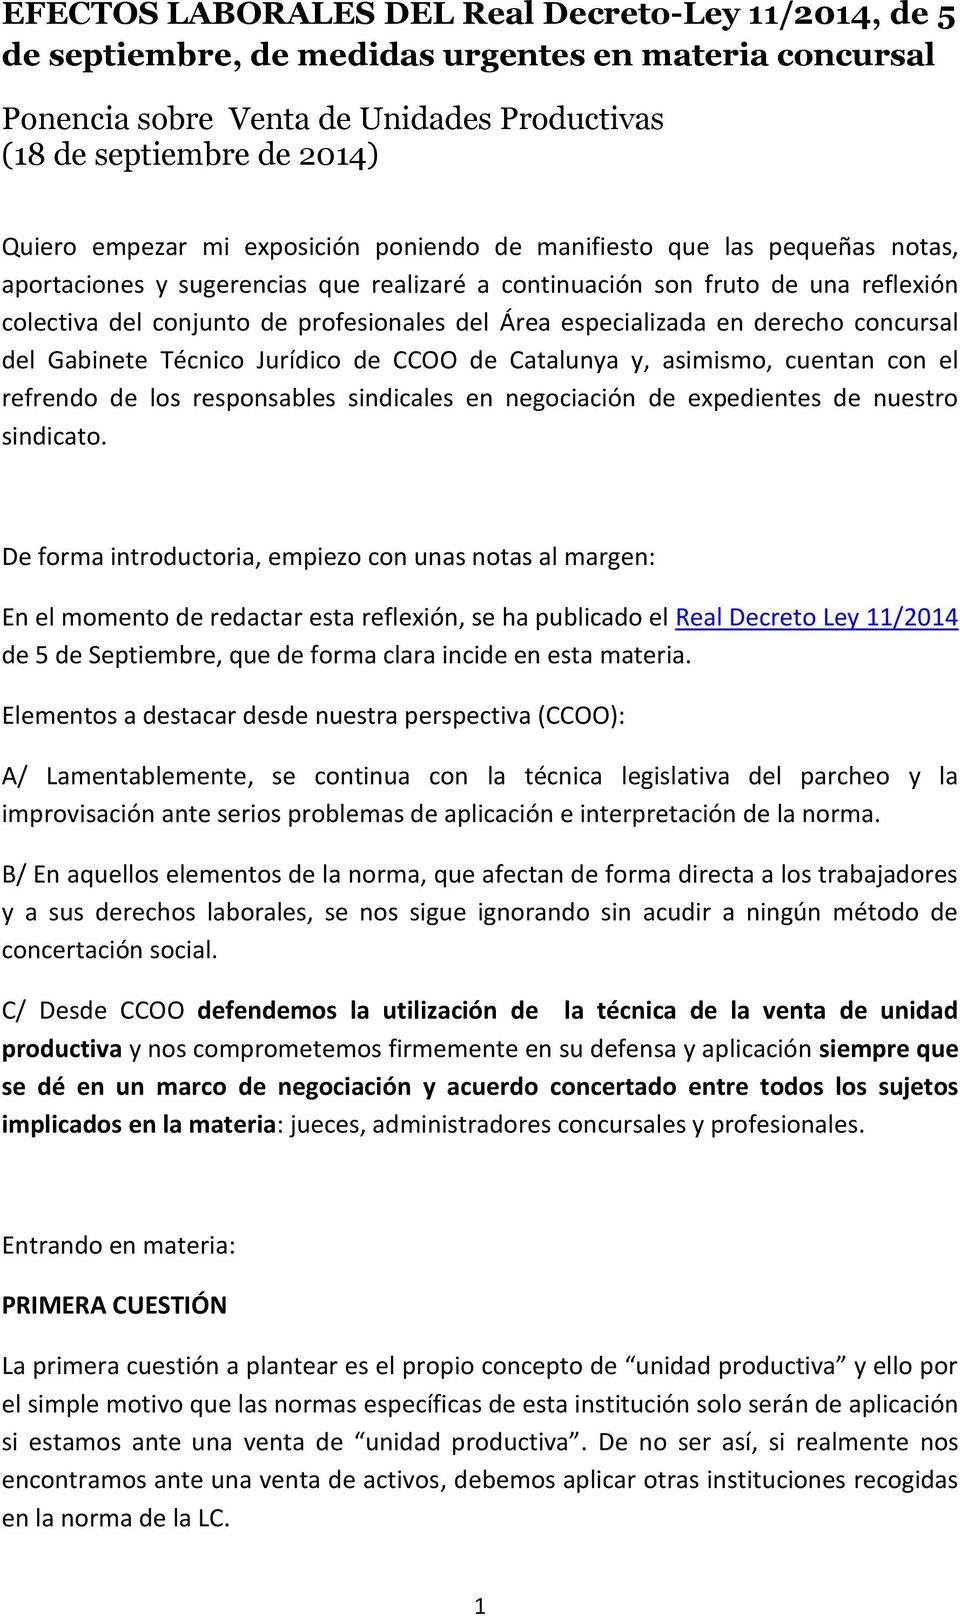 especializada en derecho concursal del Gabinete Técnico Jurídico de CCOO de Catalunya y, asimismo, cuentan con el refrendo de los responsables sindicales en negociación de expedientes de nuestro